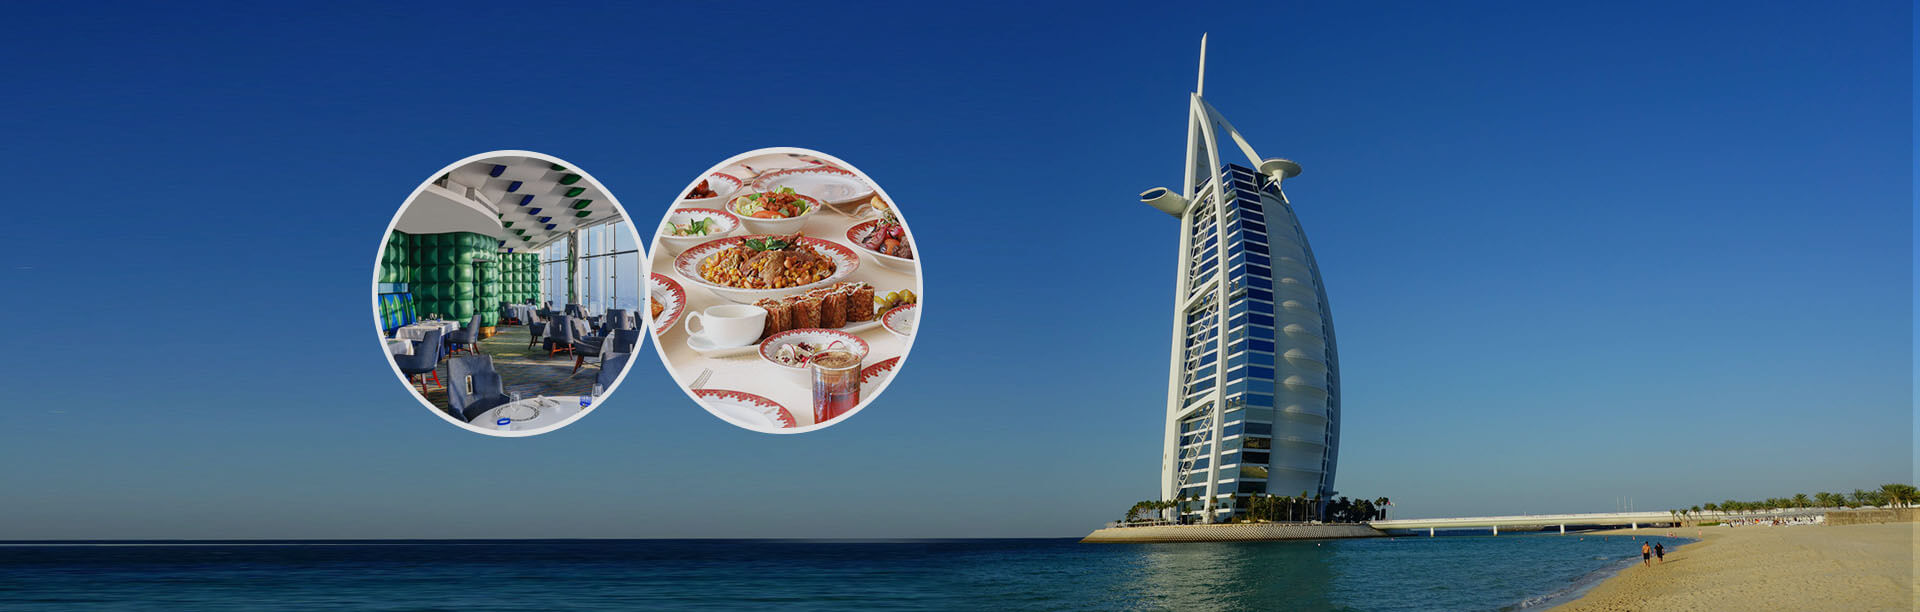 Burj Al Arab Meals Dubai